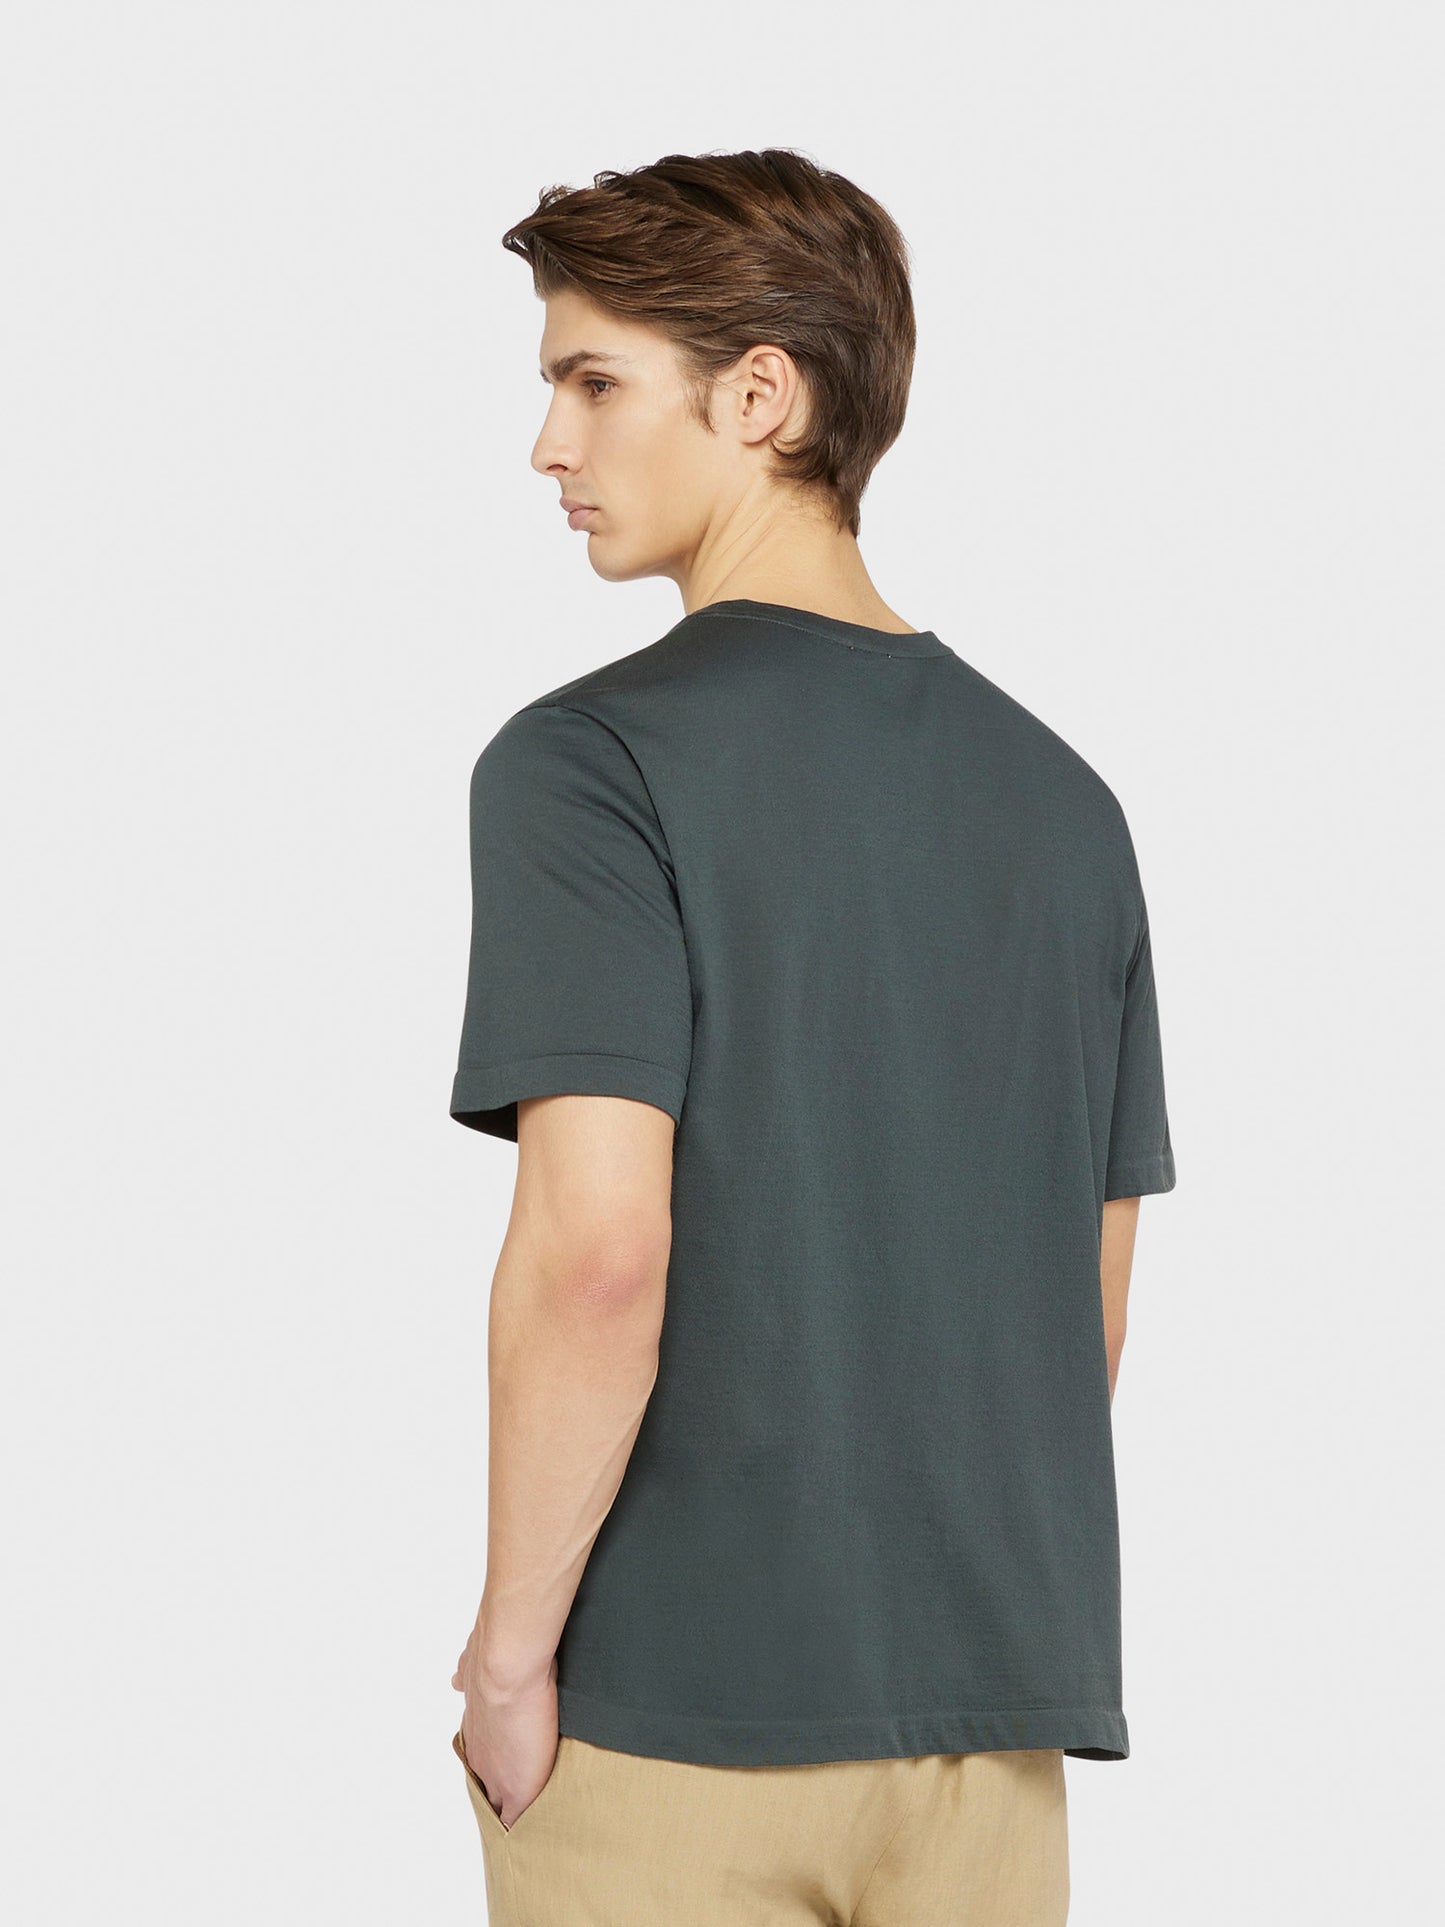 Caruso Menswear Abbigliamento Uomo T-Shirt girocollo seamless in jersey carbone indossato back